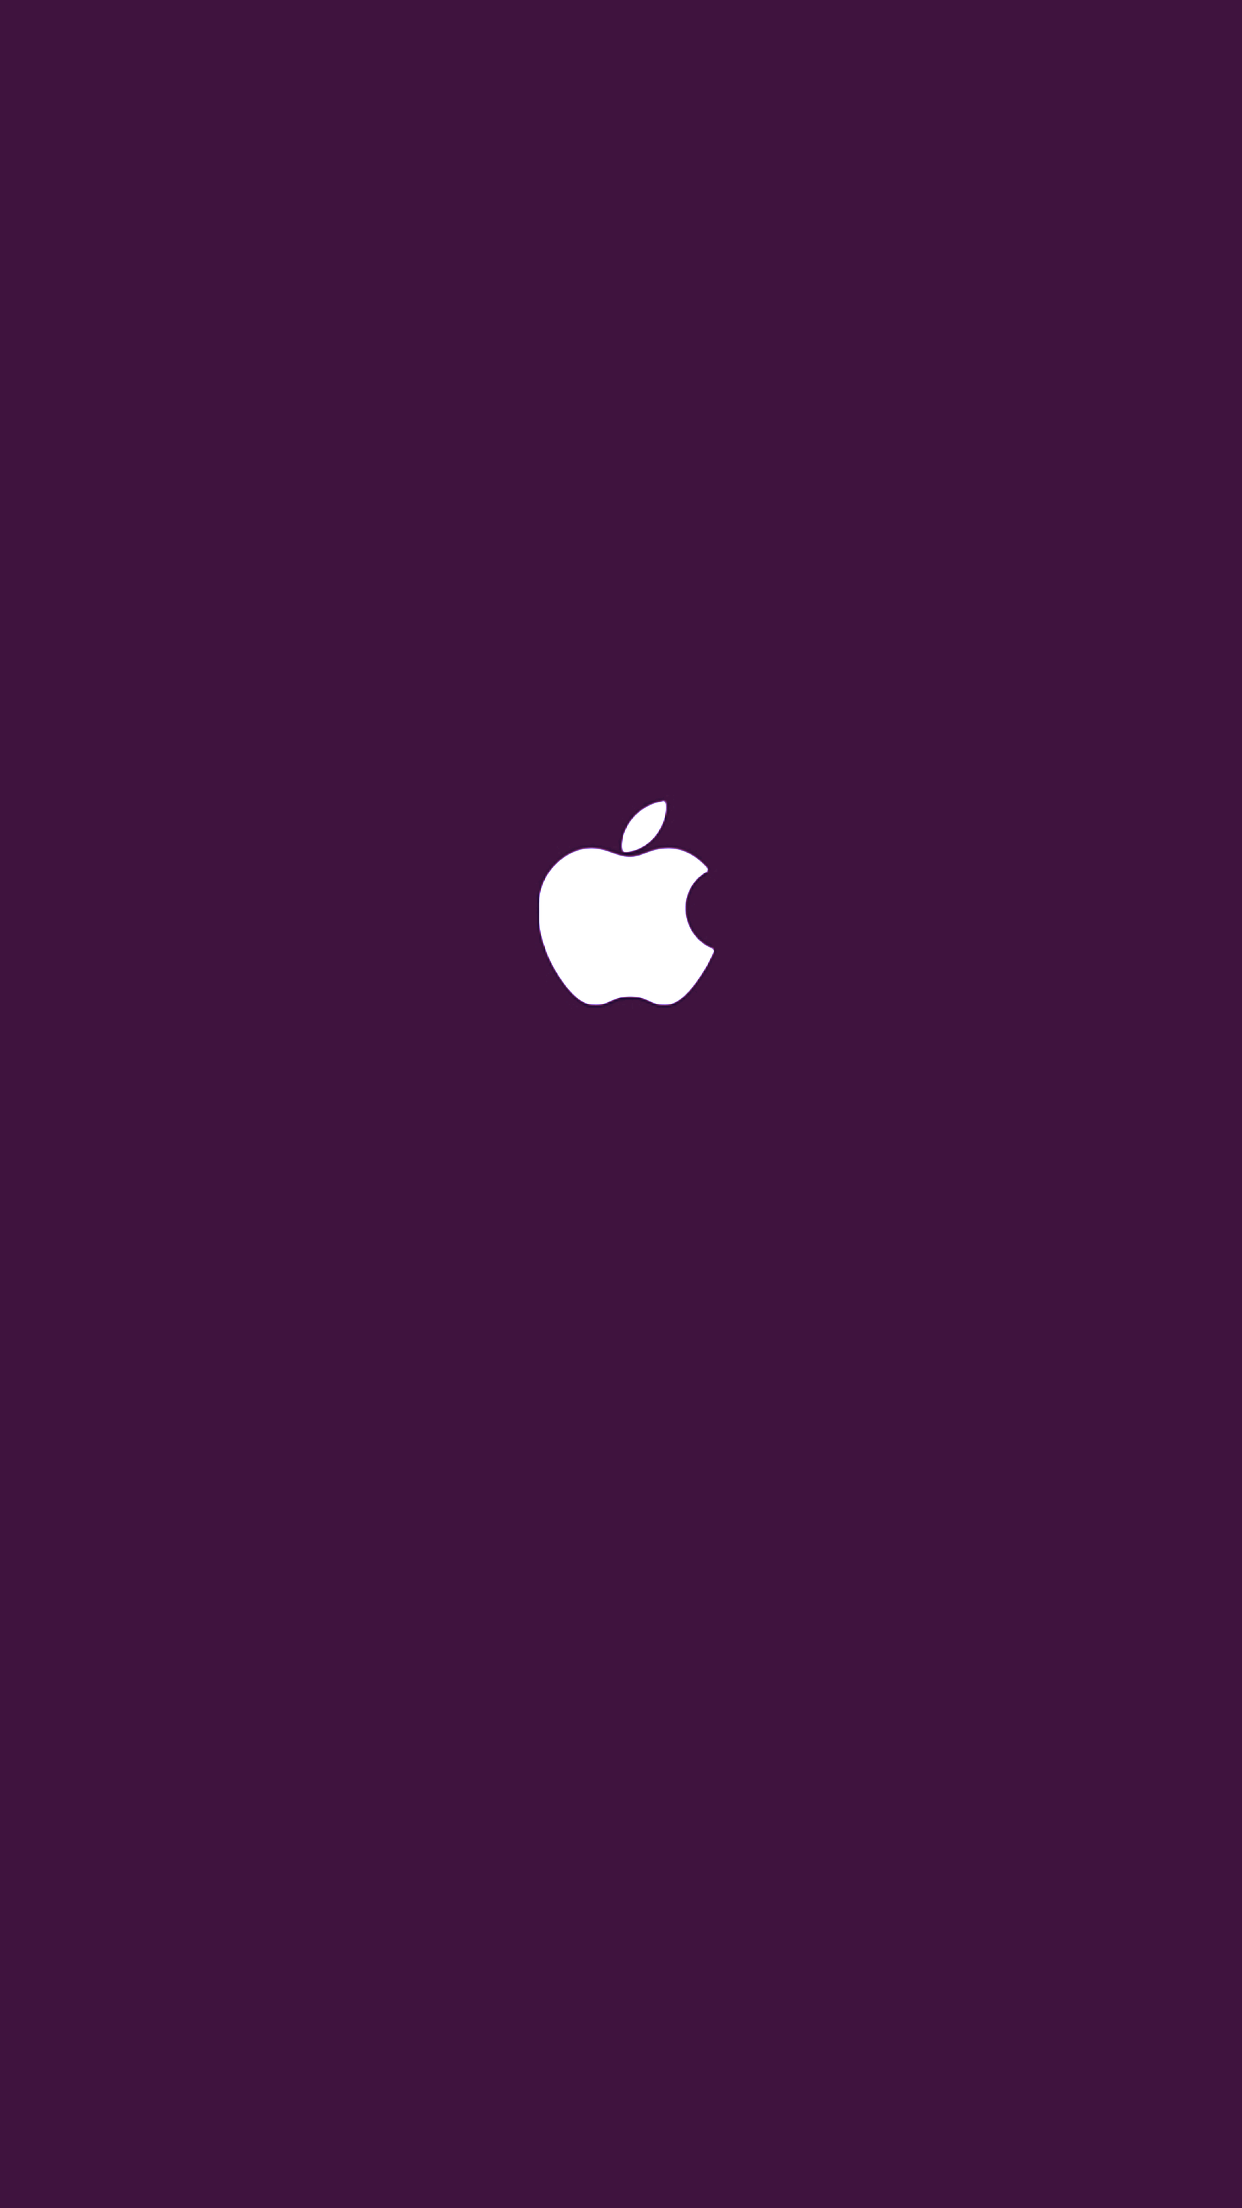 애플 로고 아이폰6S플러스 배경화면 퍼플.png